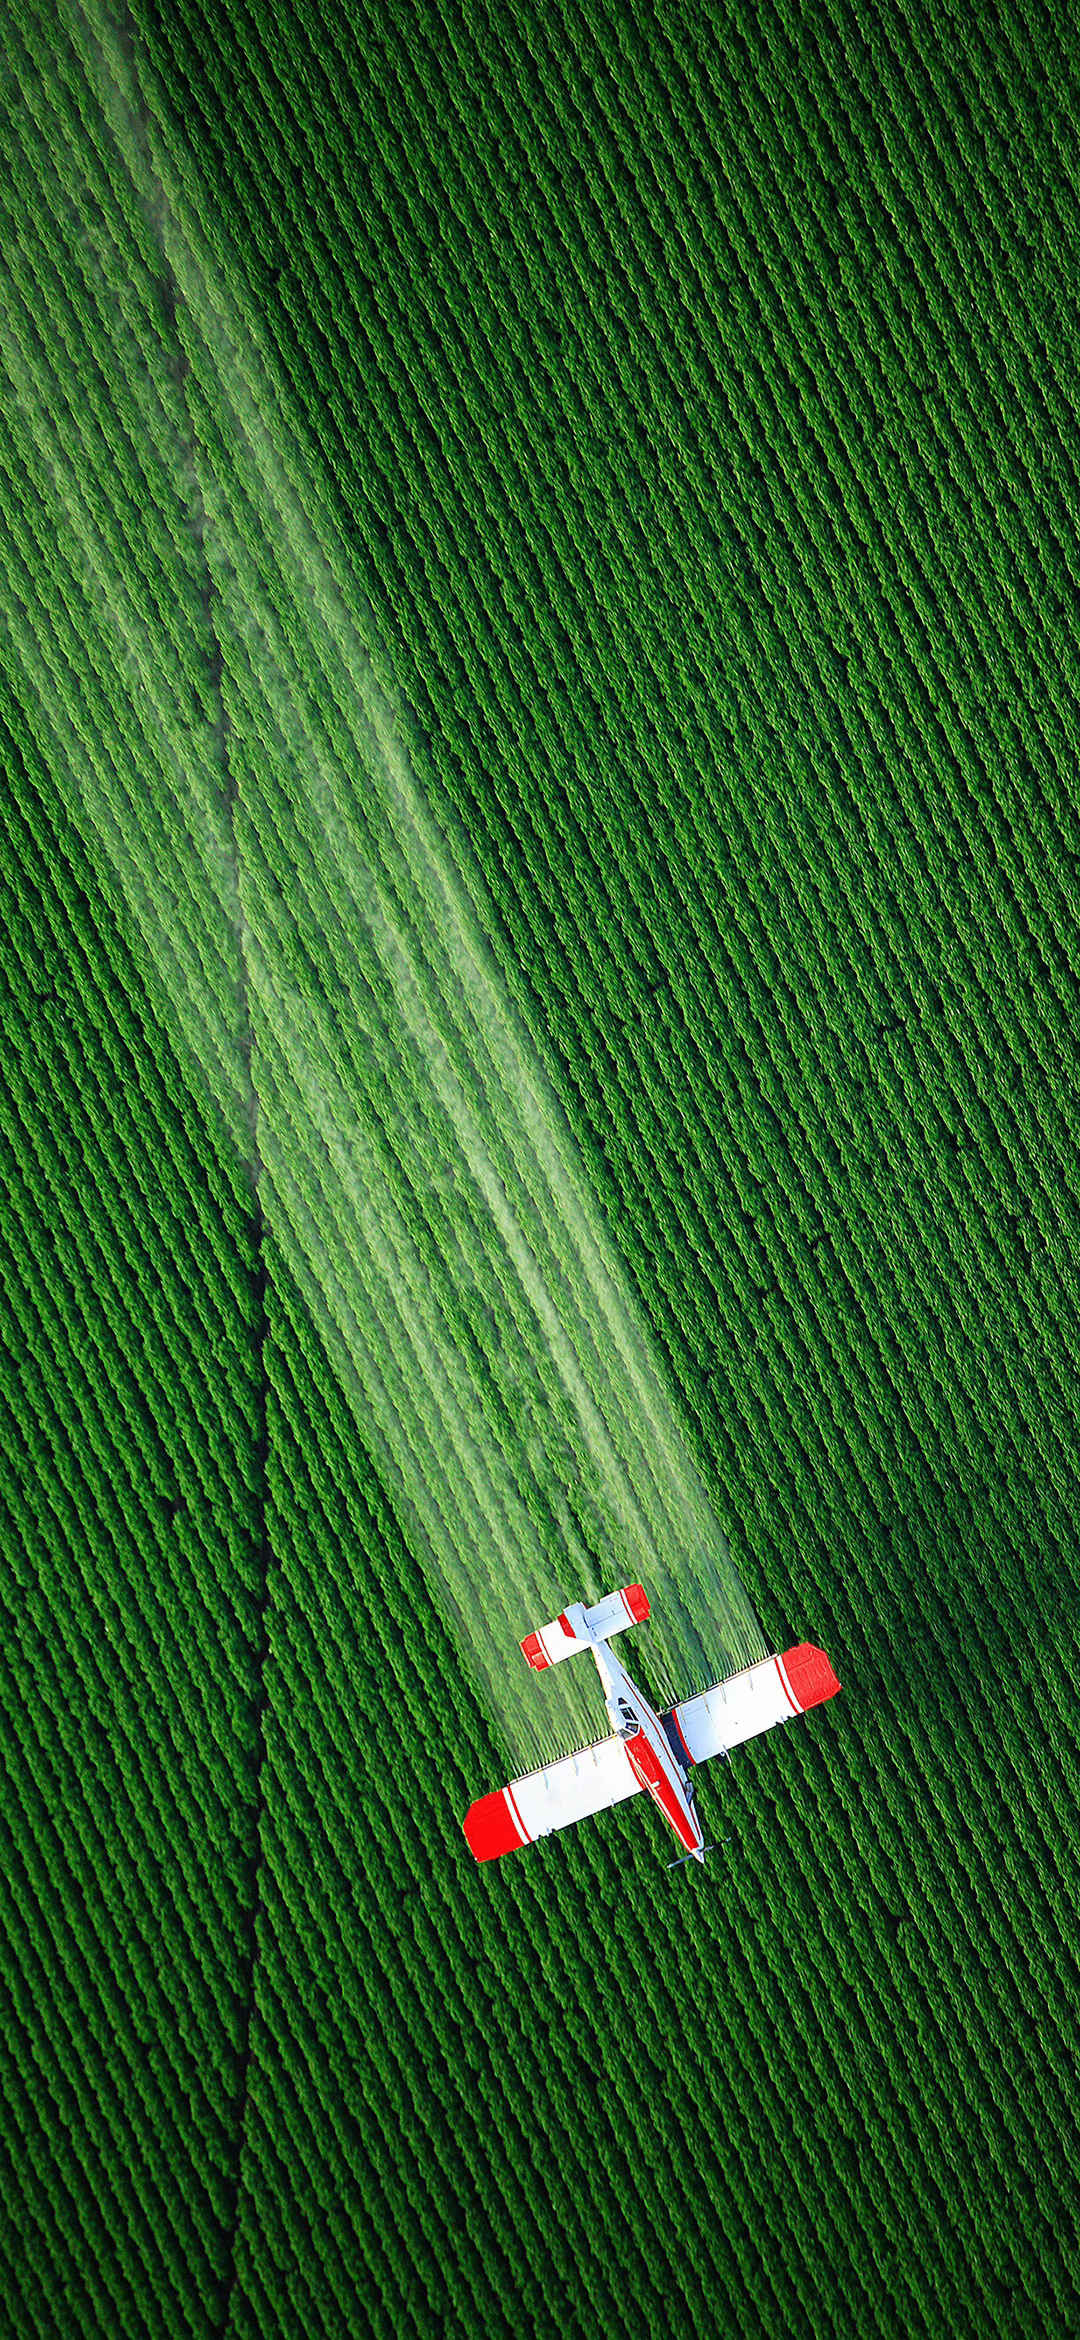 俯瞰飞机喷洒农药绿色风景手机壁纸